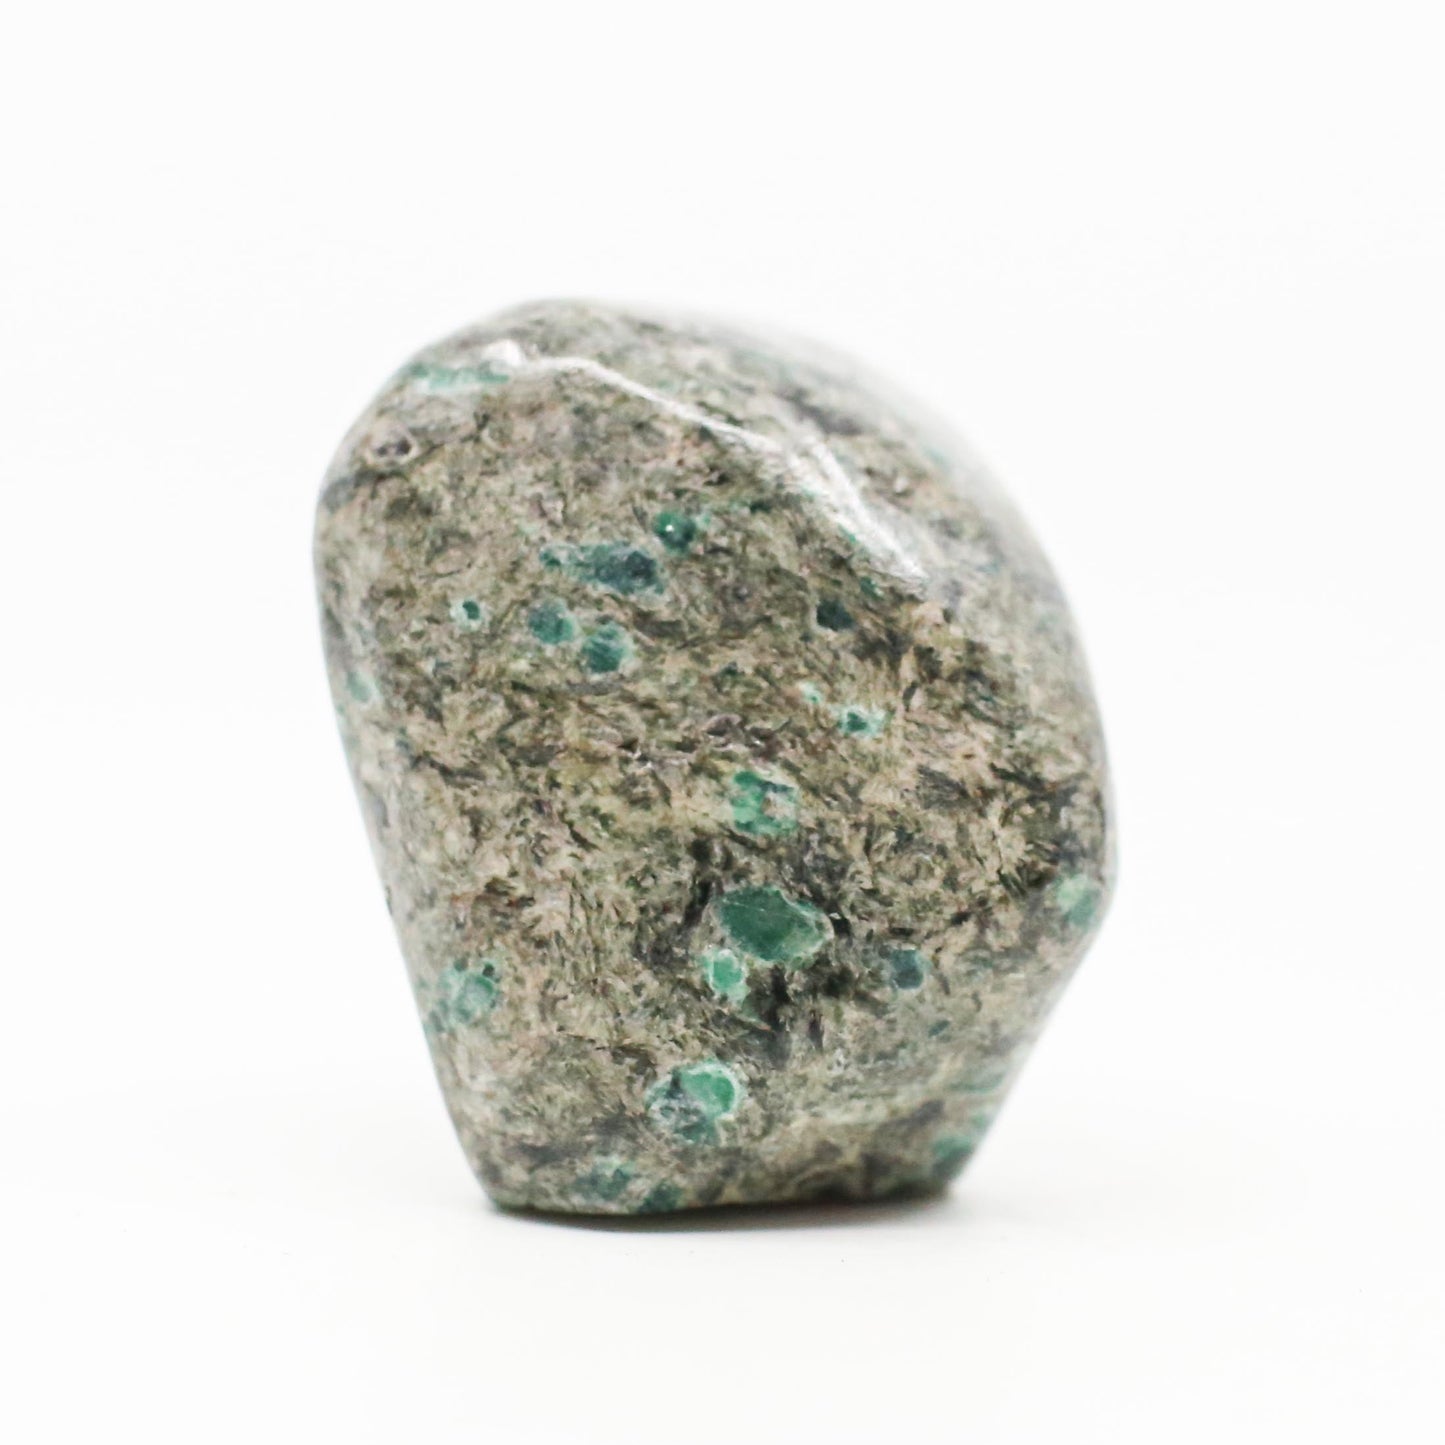 Natural Emerald on a matrix of Quartz and Mica